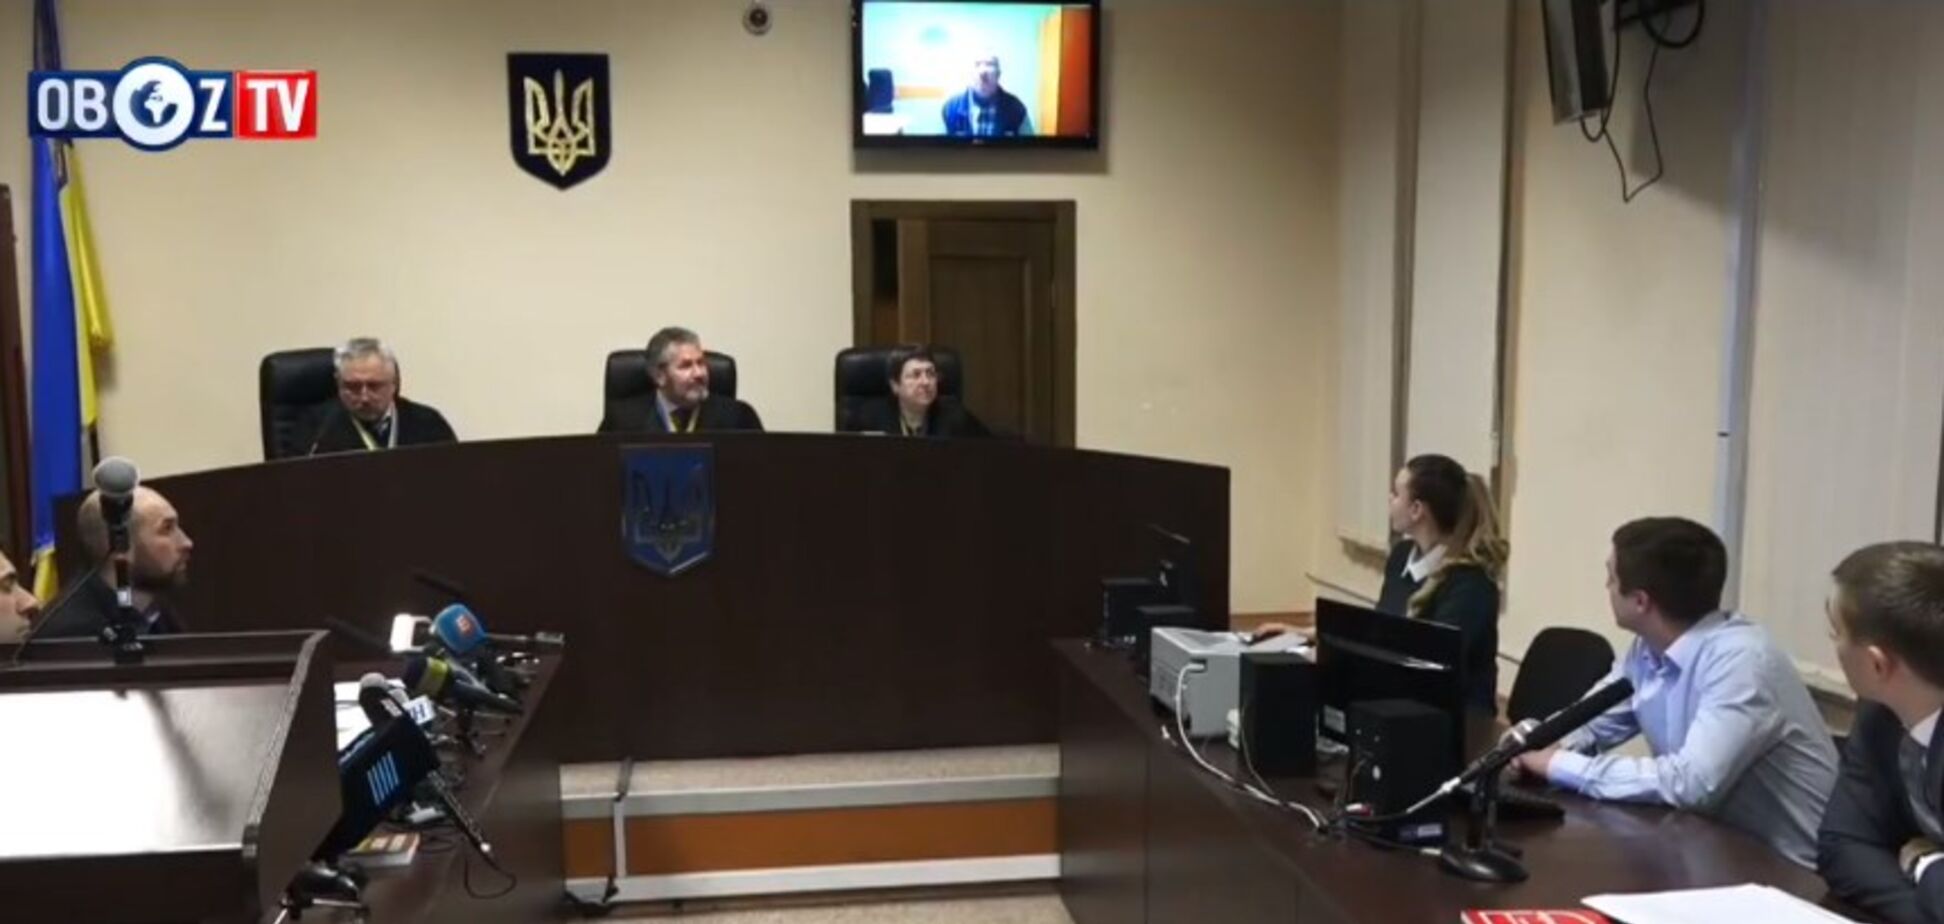 'Дело сфабриковано!' Адвокаты Россошанского сделали громкое заявление